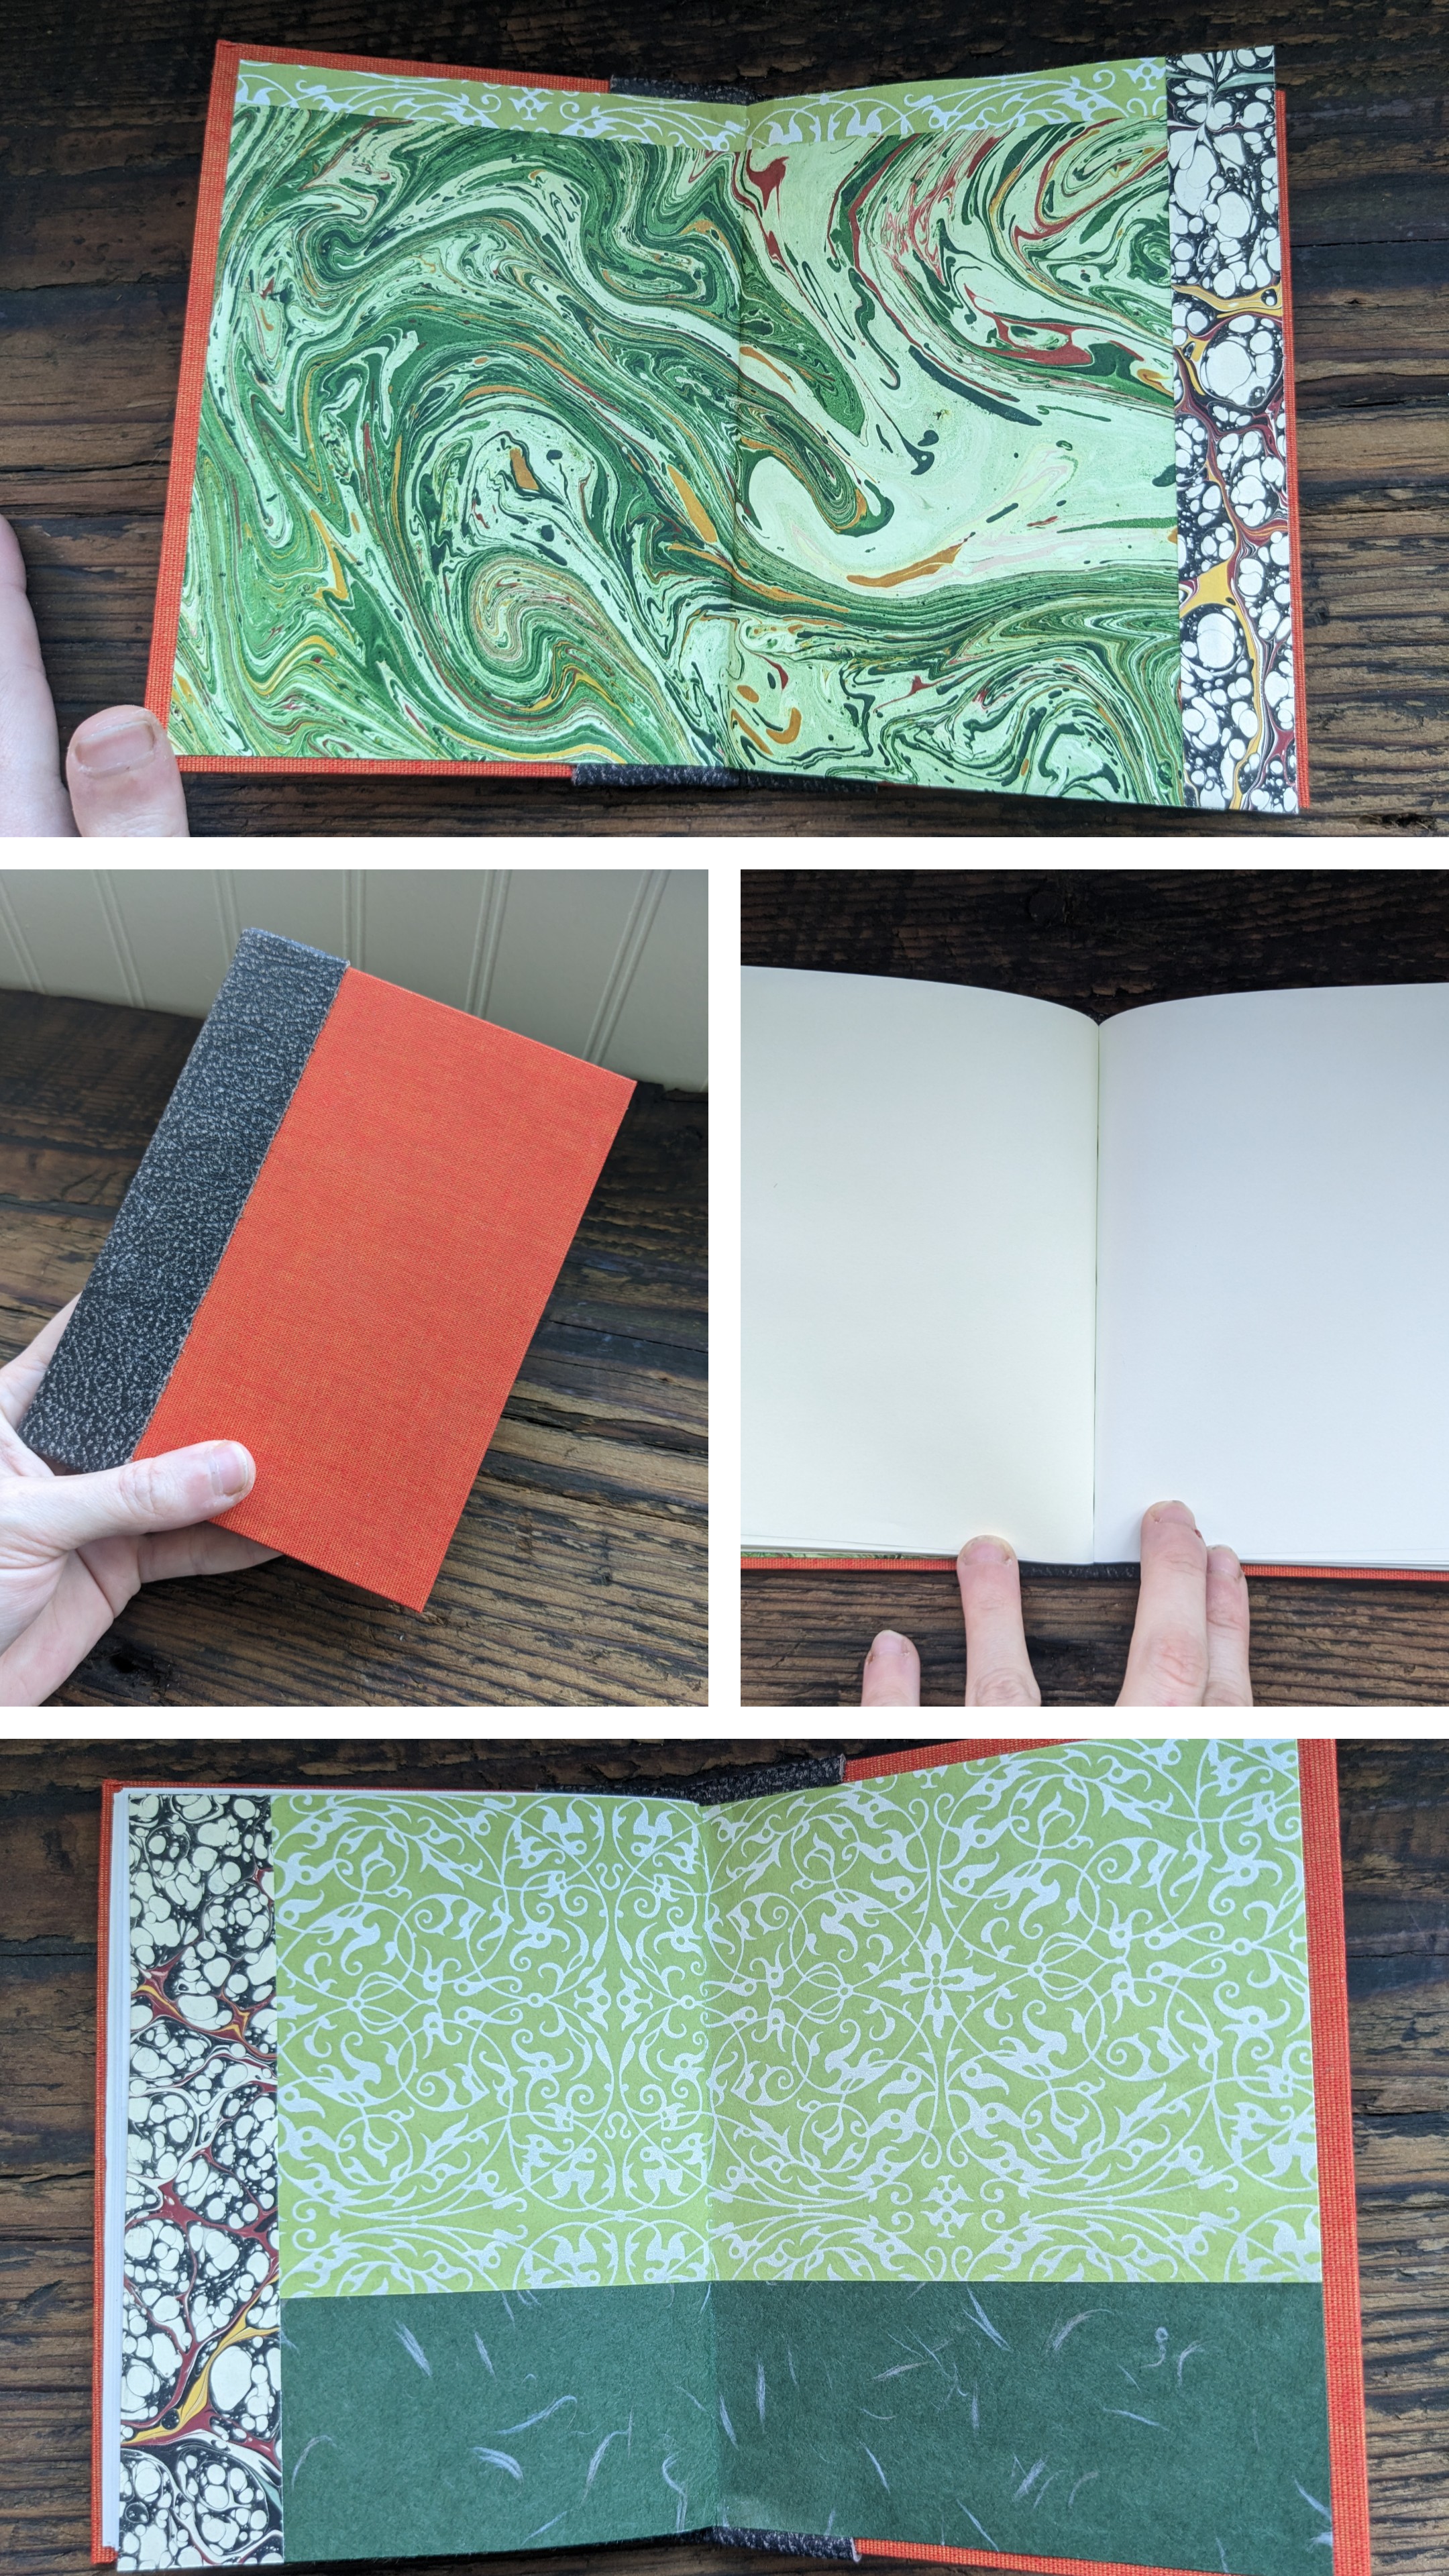 A 4-part collage of a slim handbound book.